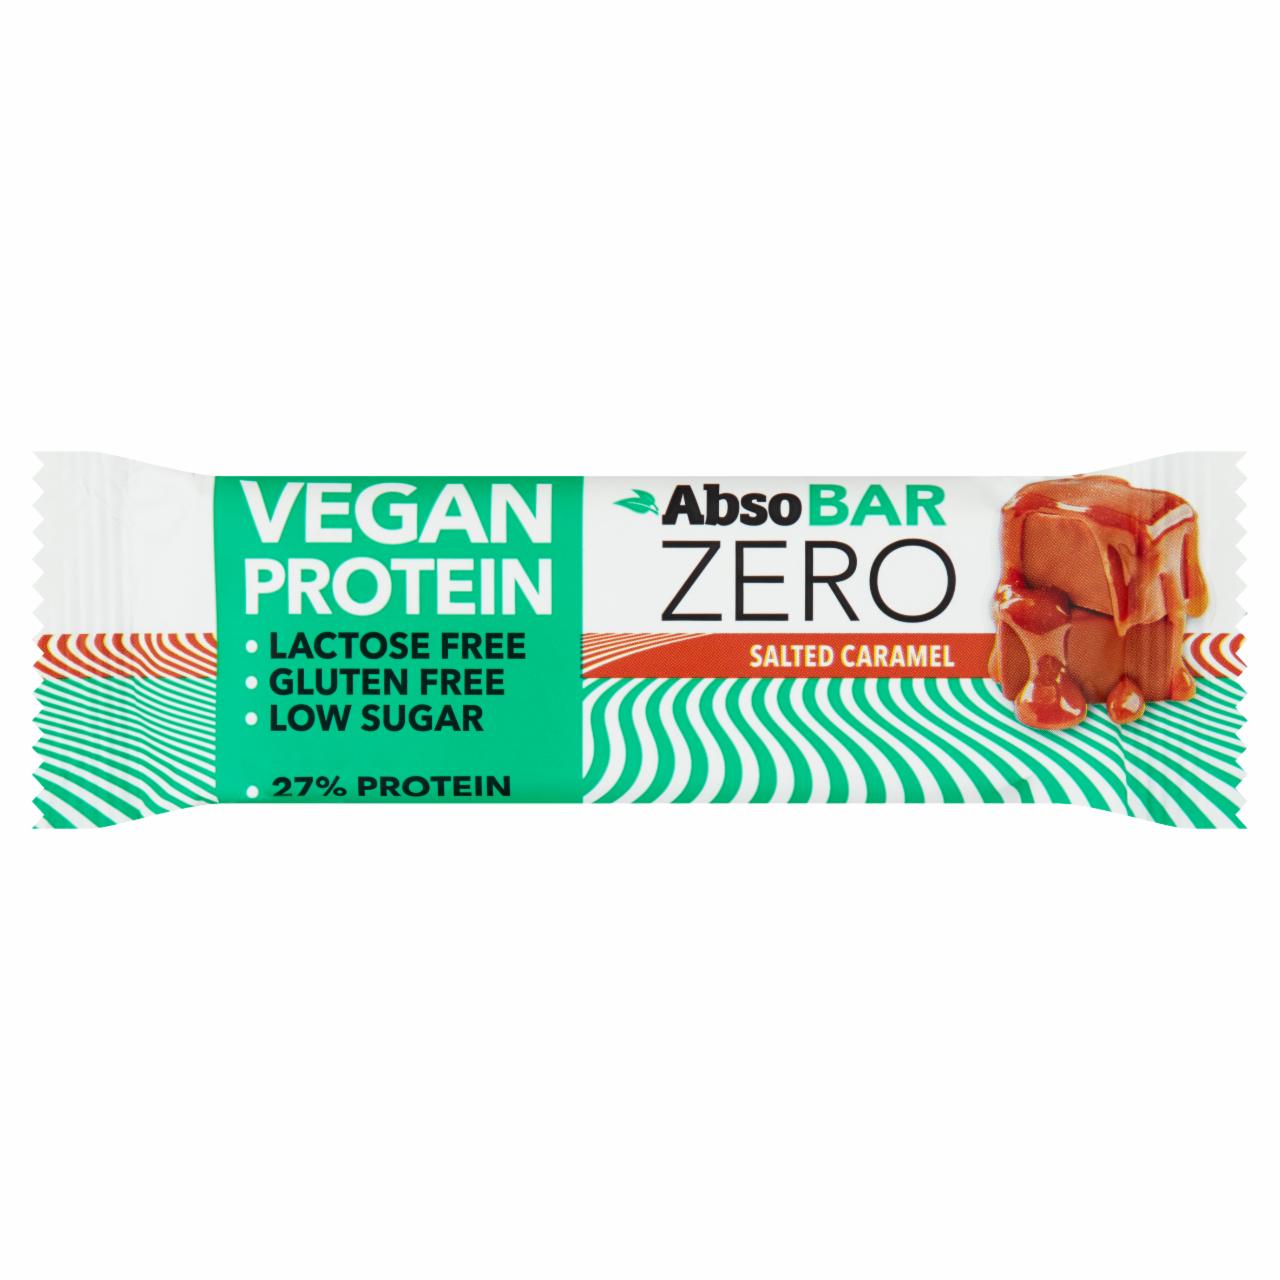 Képek - Absobar Zero sós karamella ízesítésű magas fehérjetartalmú szelet édesítőszerekkel 40 g